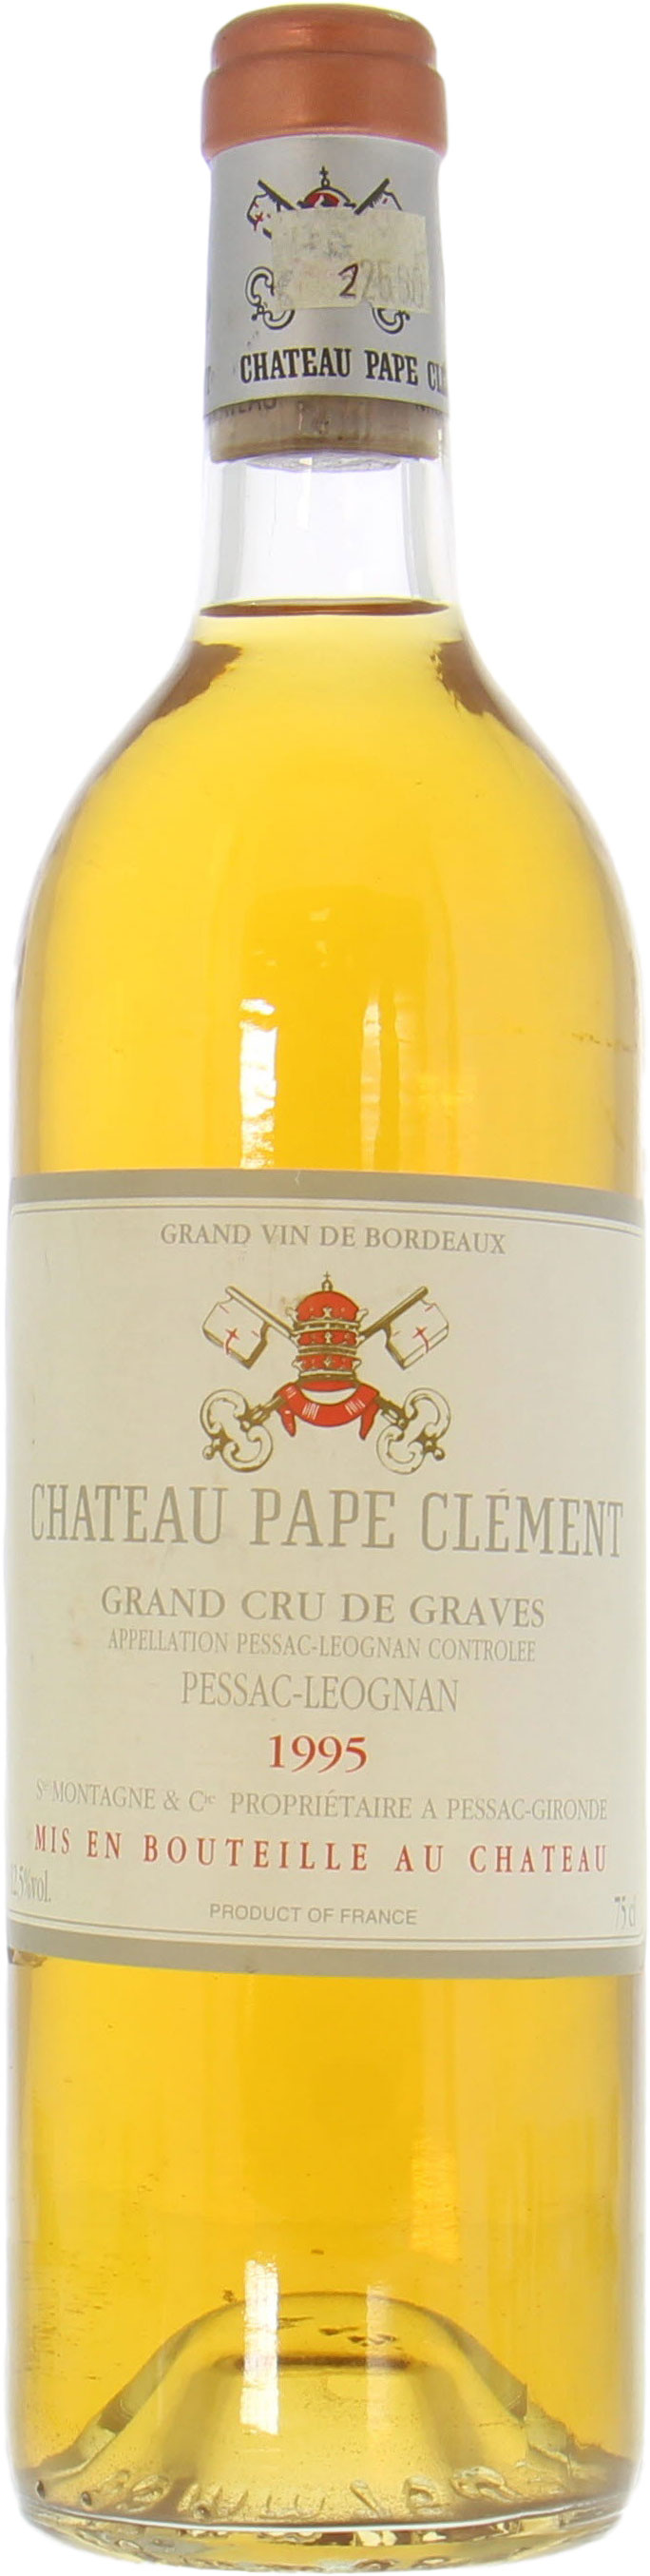 Chateau Pape Clement Blanc - Chateau Pape Clement Blanc 1995 Perfect